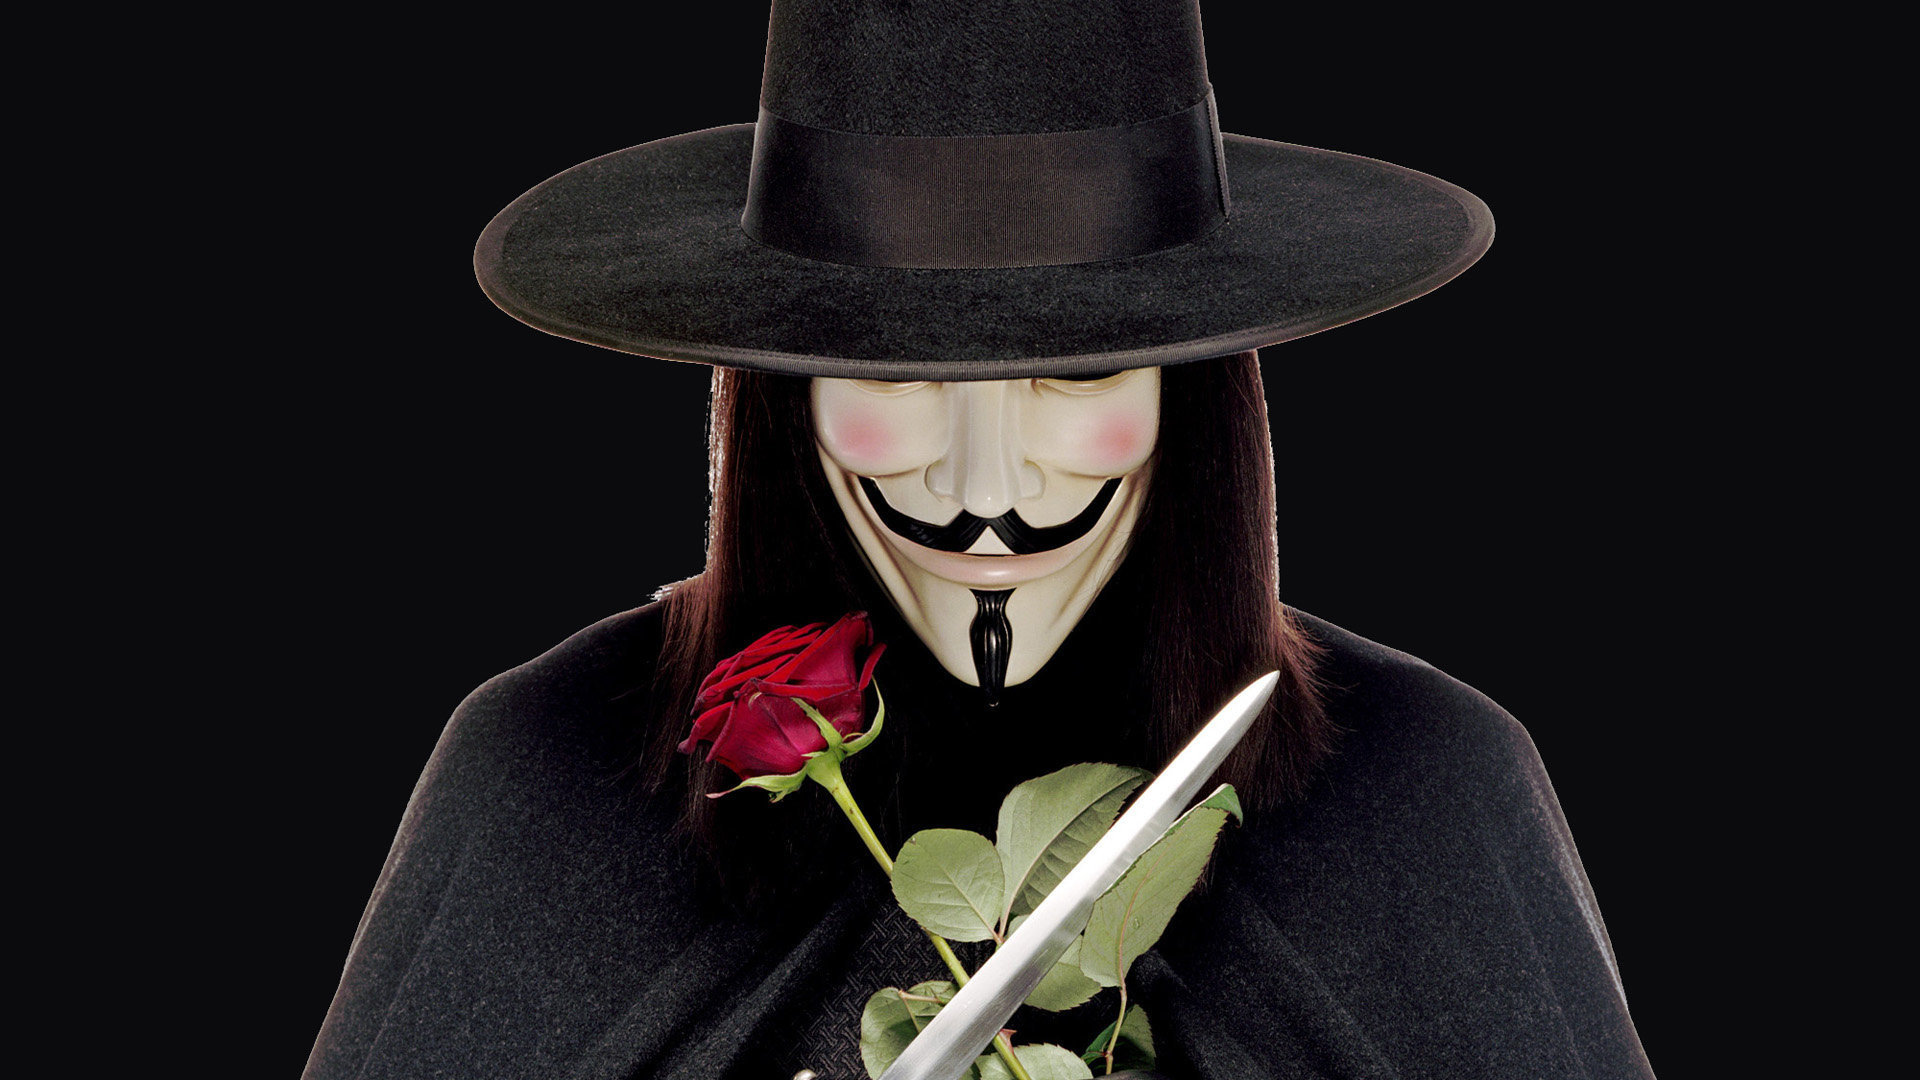 Best V For Vendetta wallpaper ID:92150 for High Resolution full hd 1080p desktop